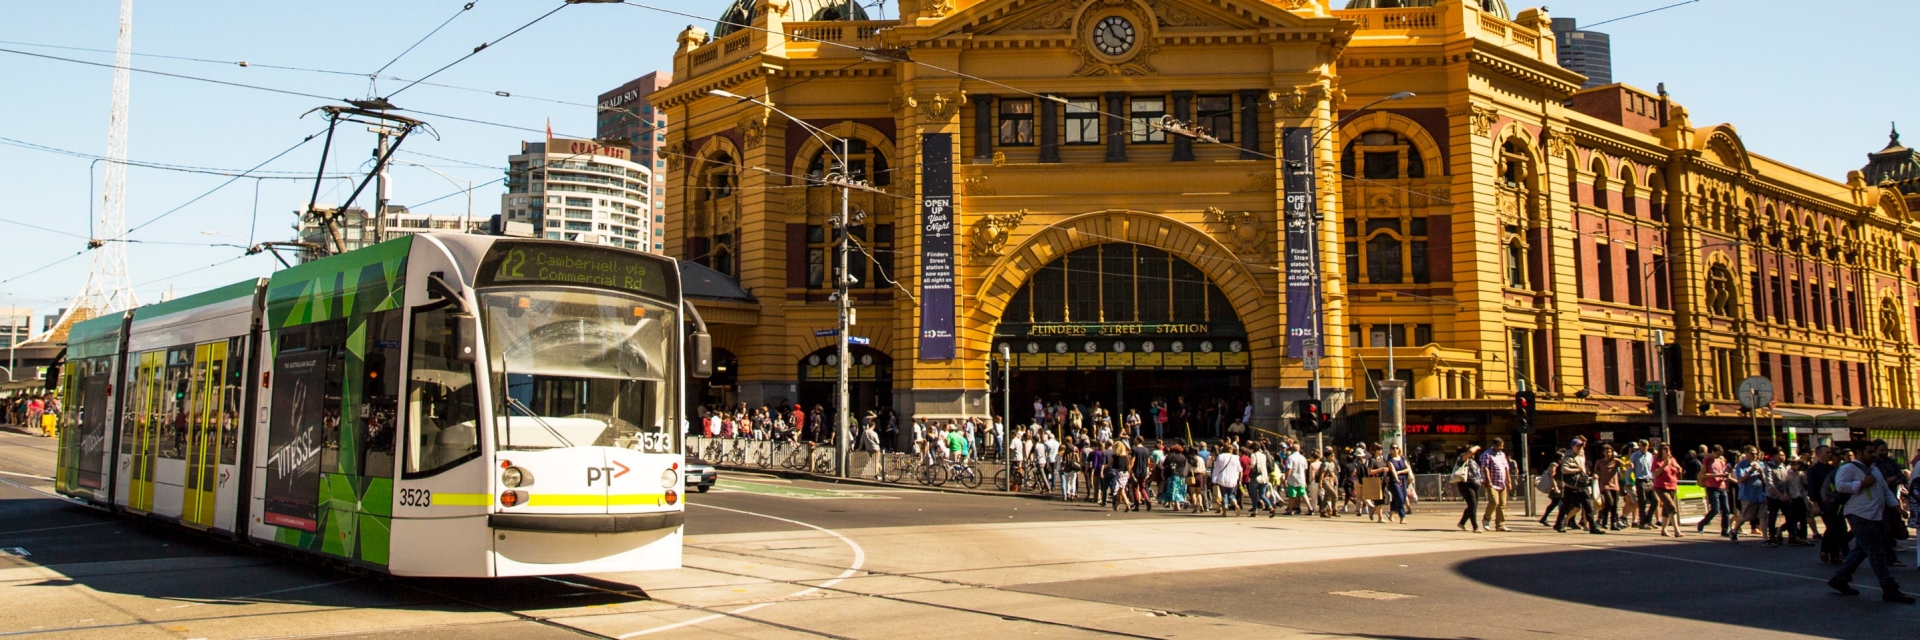 Melbourne Public Transport Guide